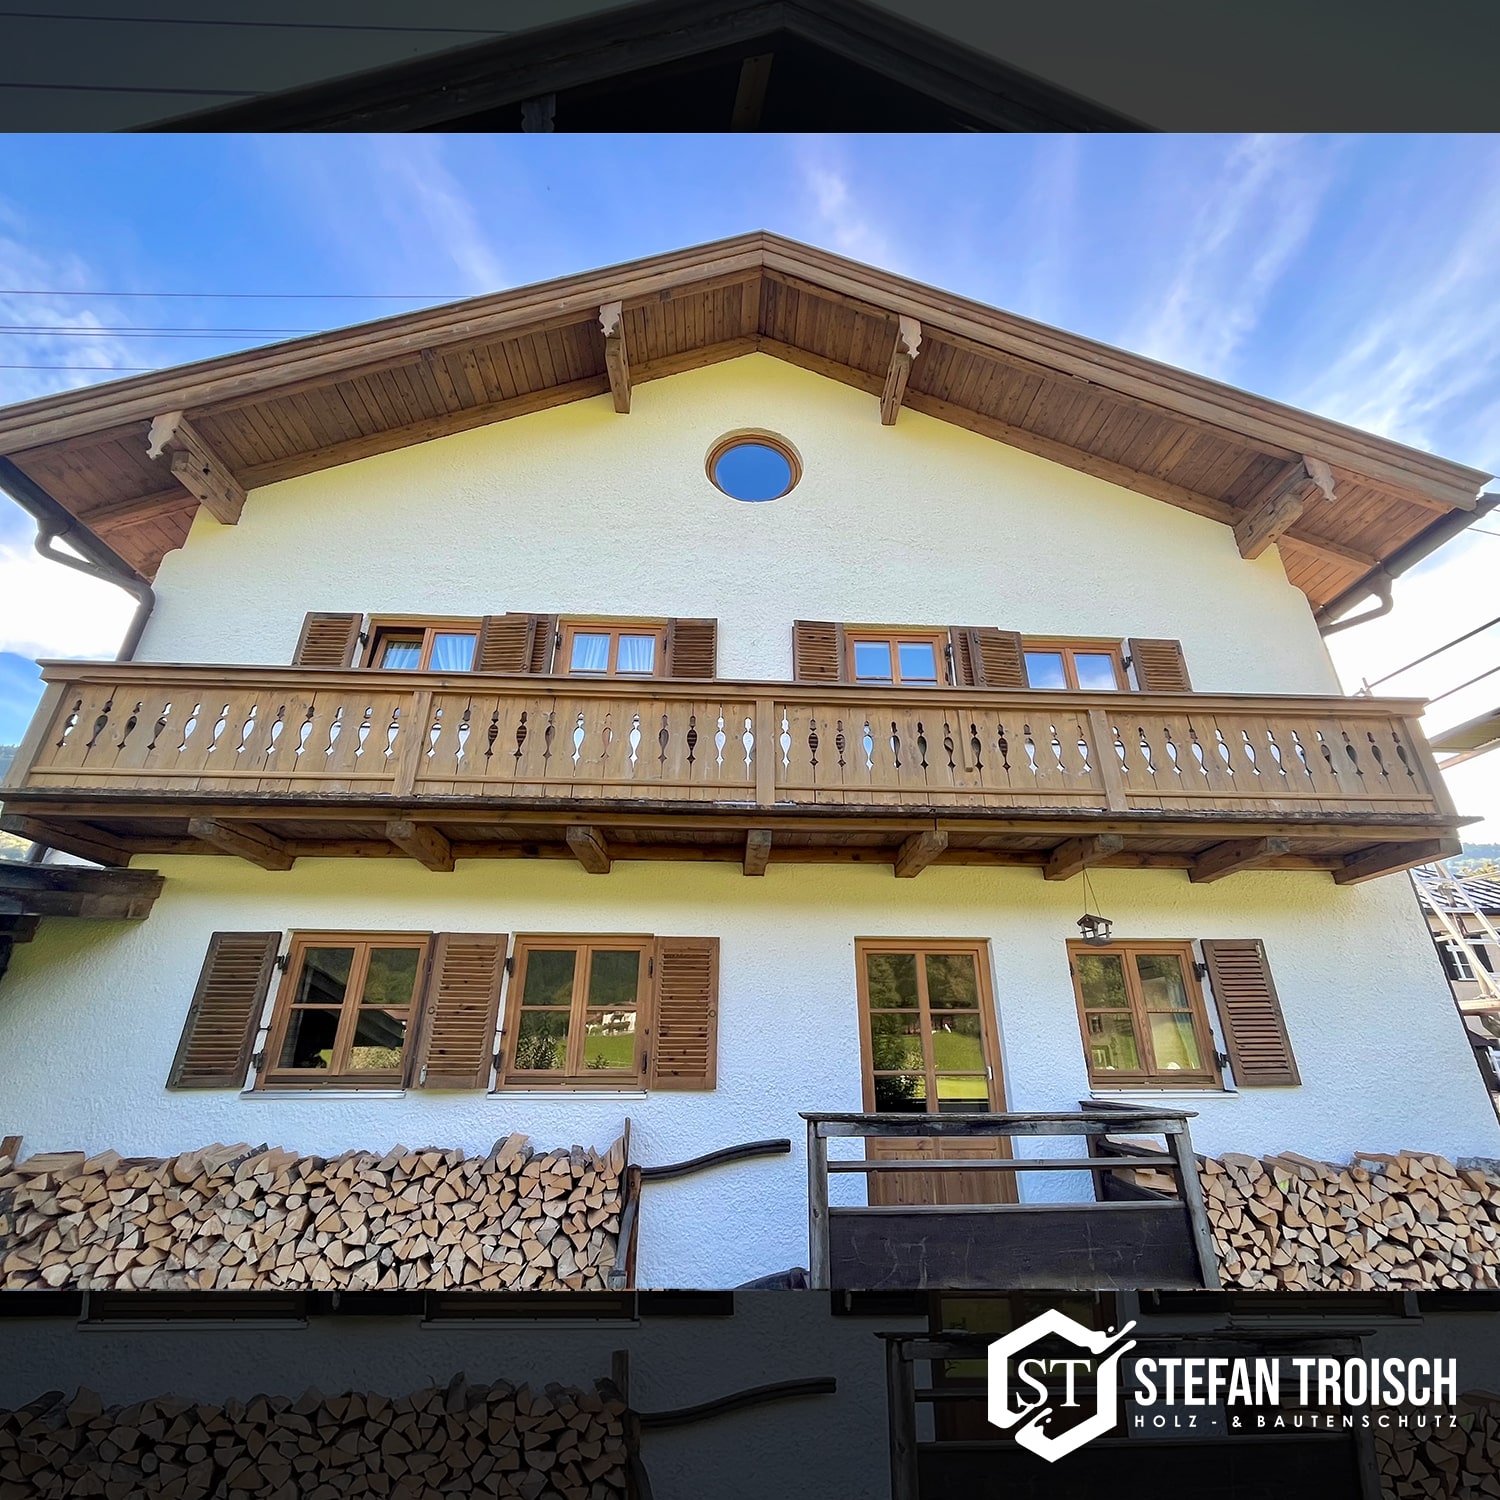 Stefan-Troisch-Holz-und-Fassadenanstriche-Nachher1-min